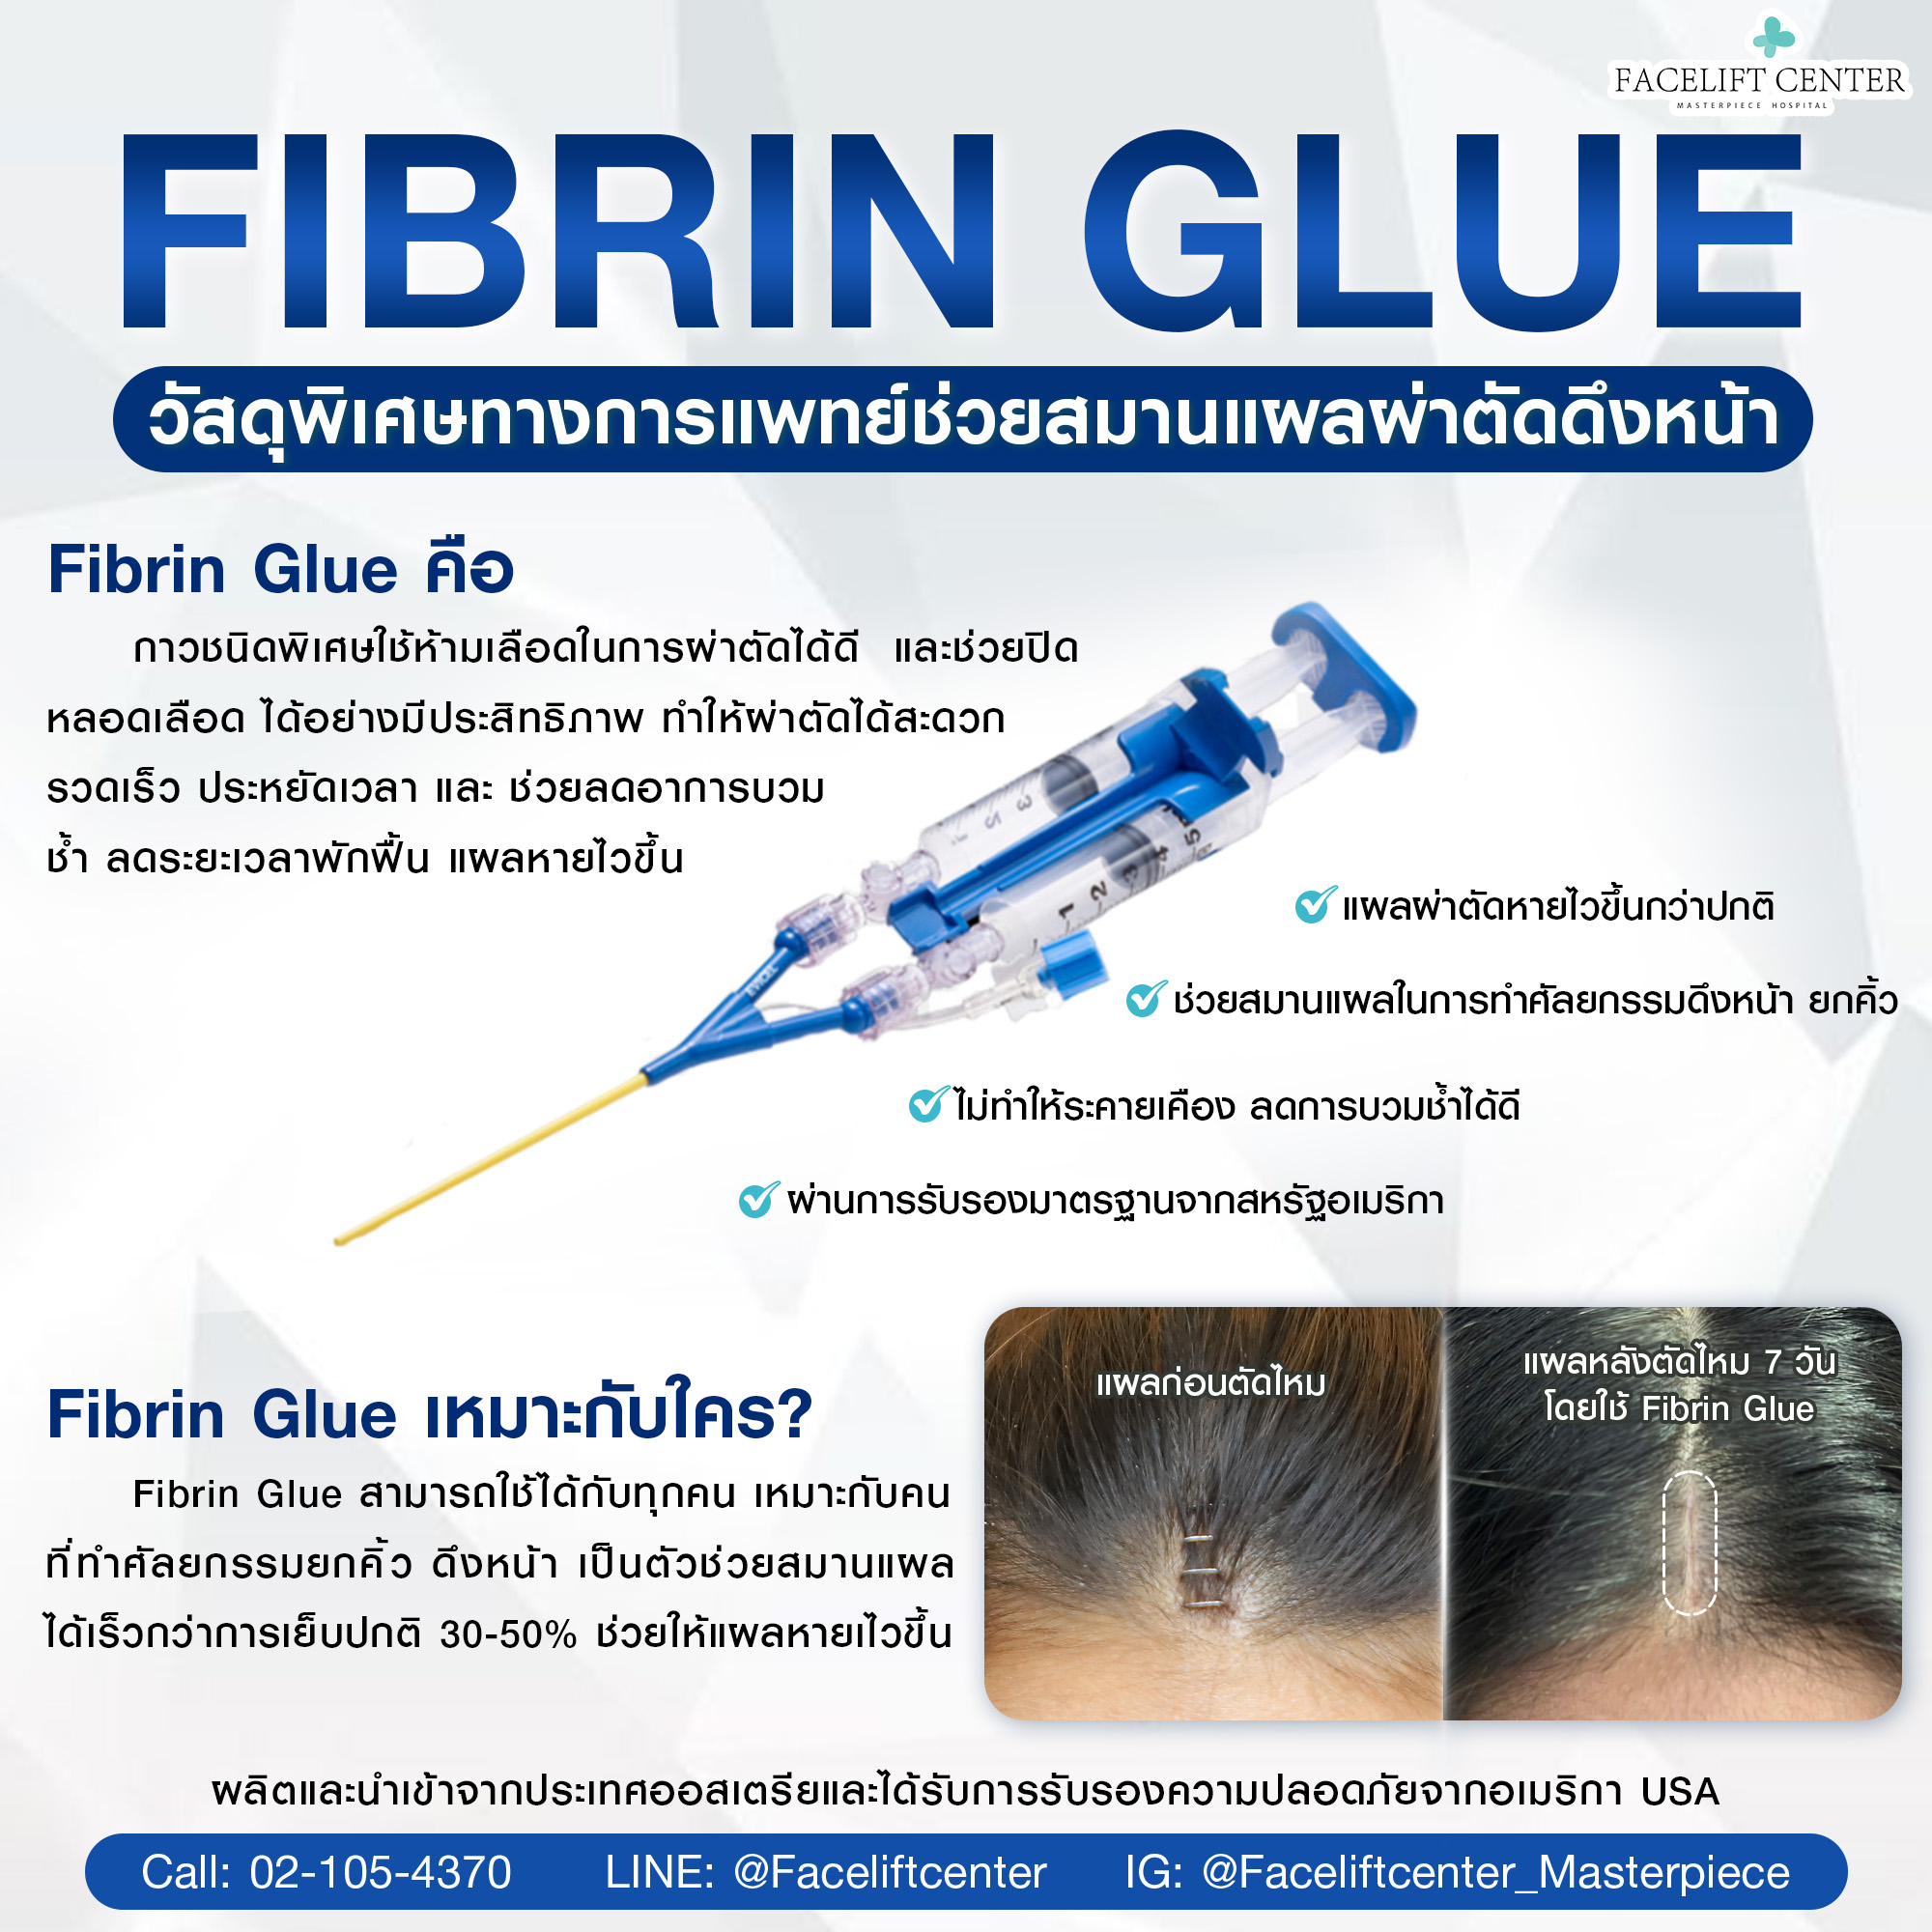 Fibrin glue